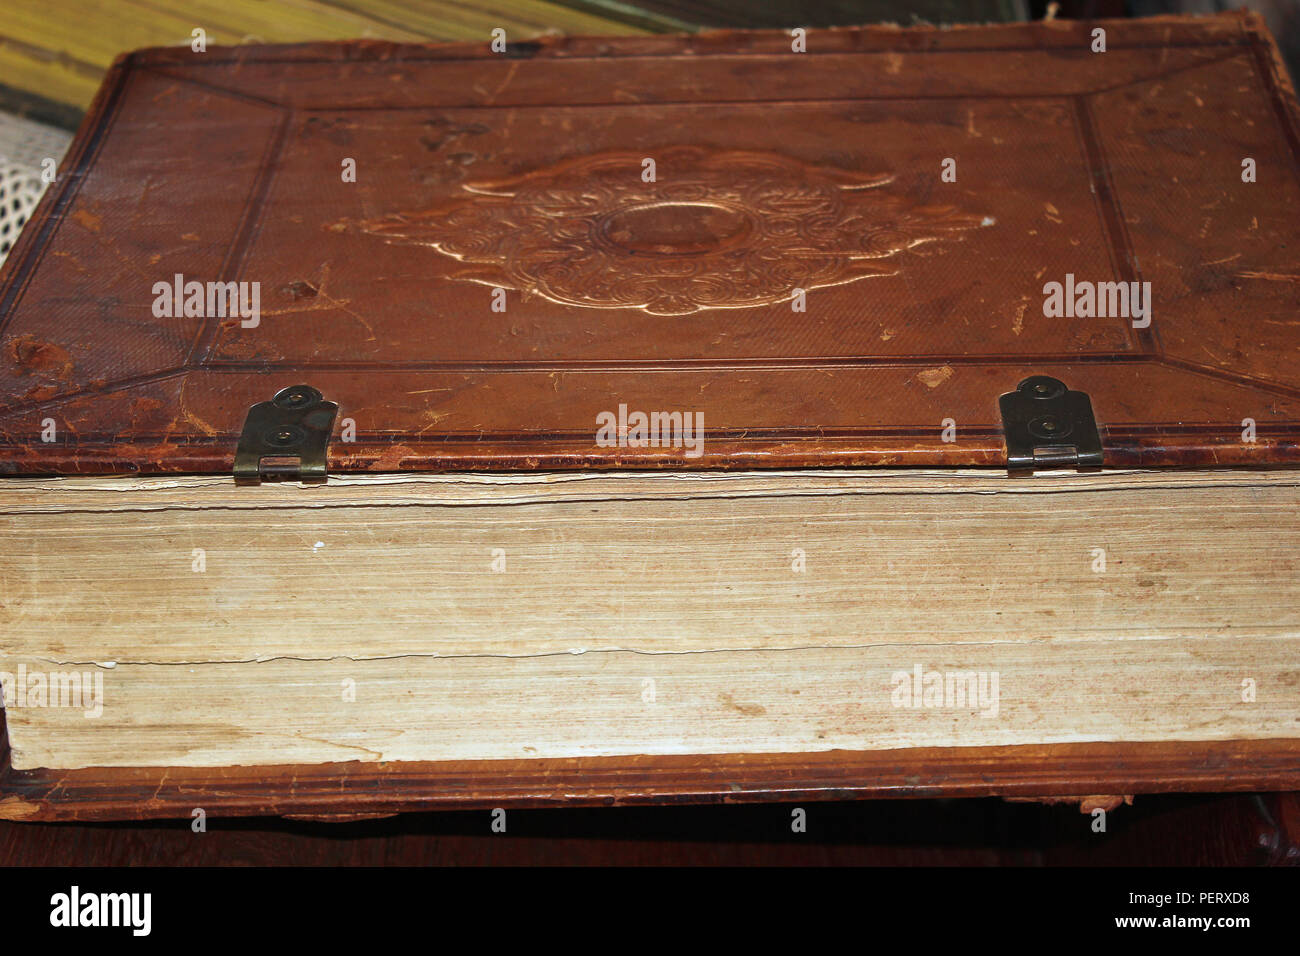 Vieux livre relié de cuir marron fermé avec les captures de cuivre et l'empreinte en relief sur le couvercle signe couché sur le côté Banque D'Images